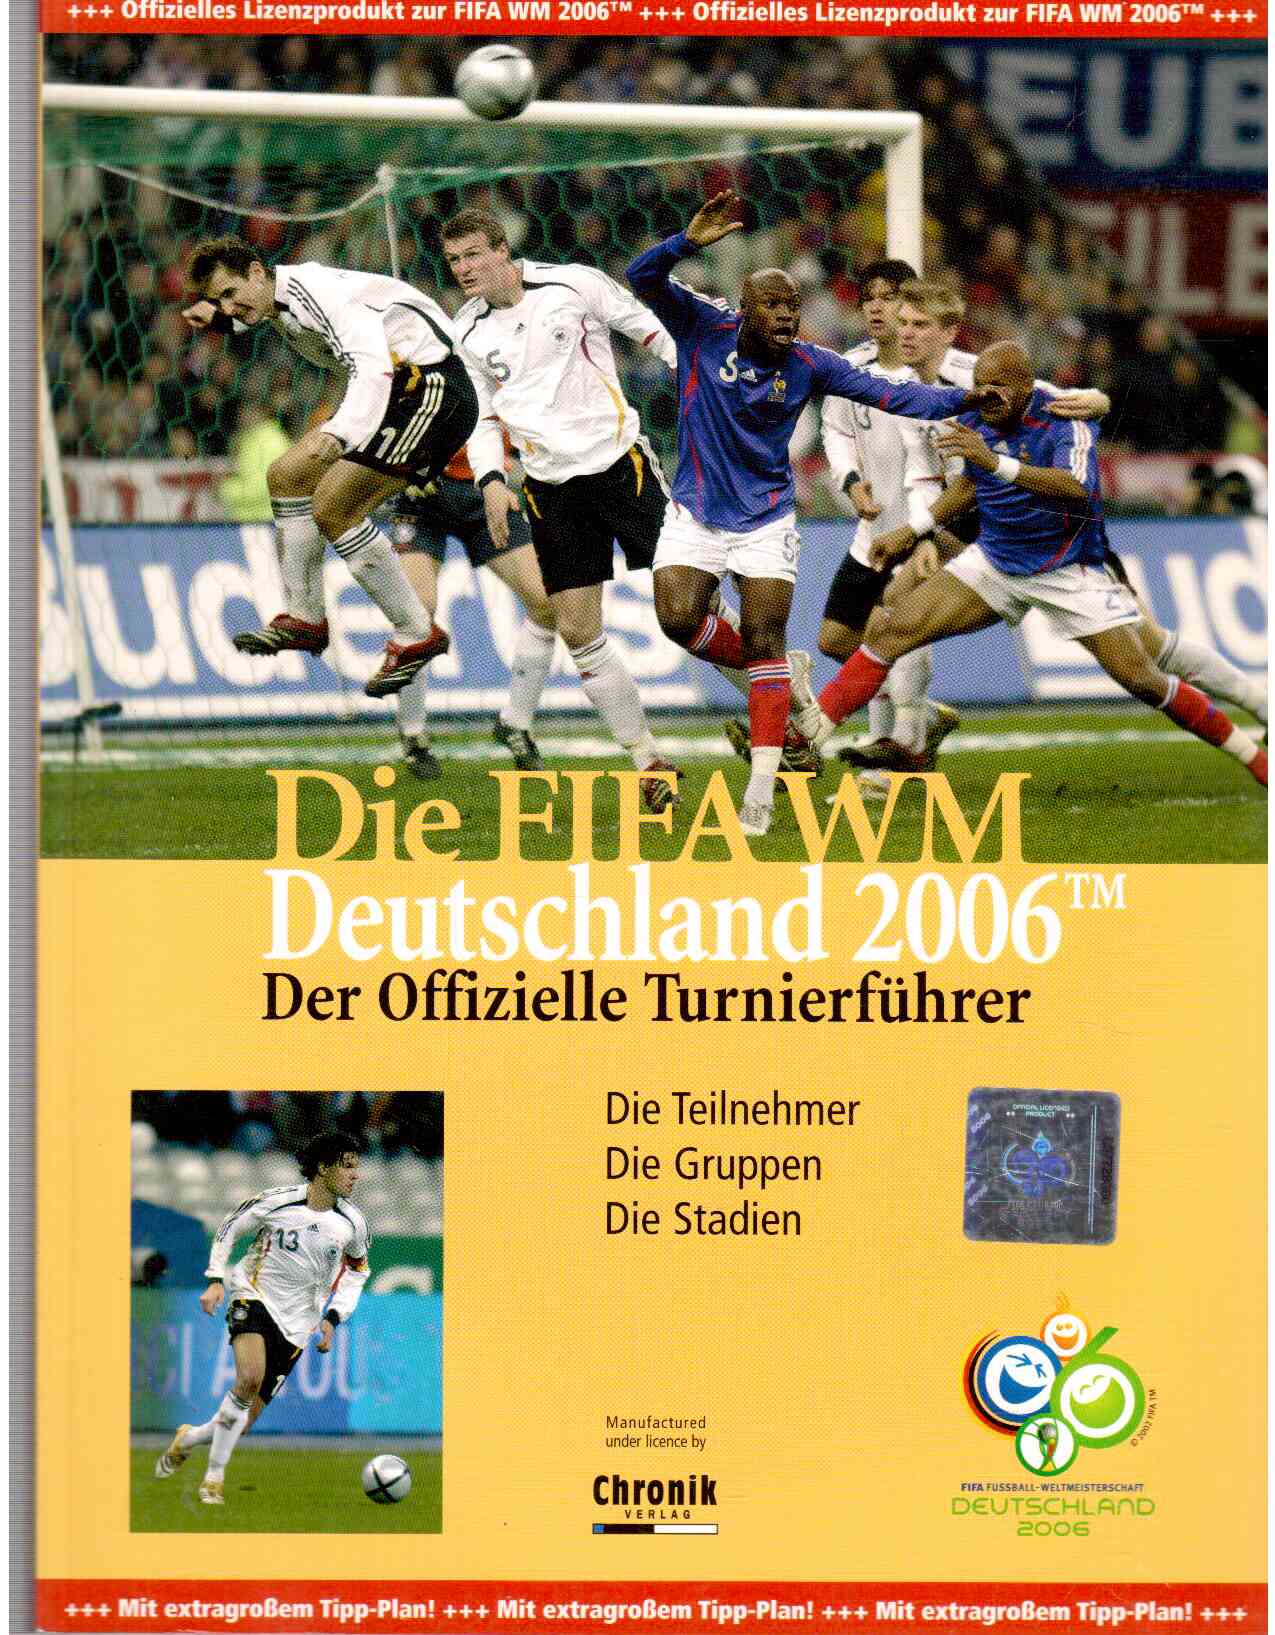 Die FIFA WM Deutschland 2006, Der Offizielle Turnierführer